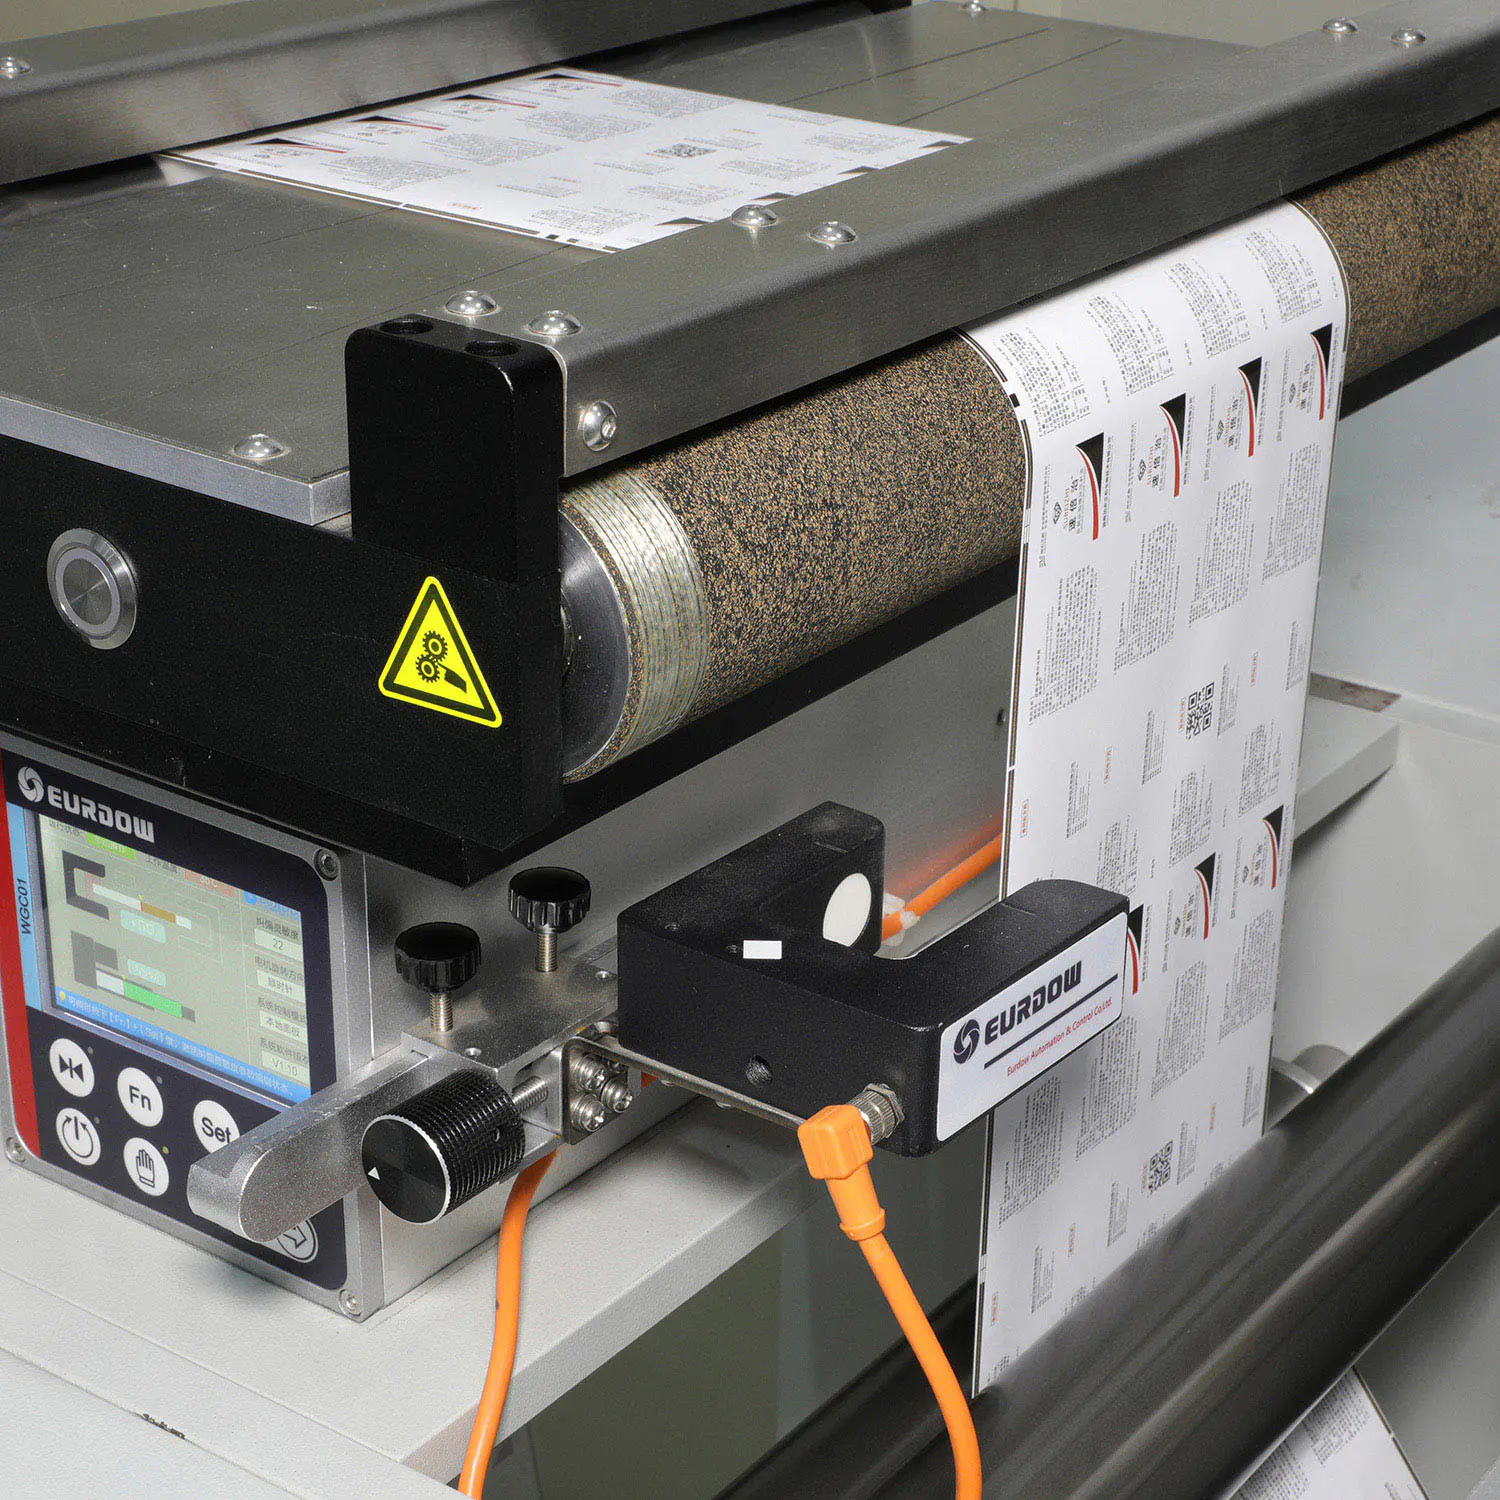 Digital UV Inkjet Printer Label Production Press